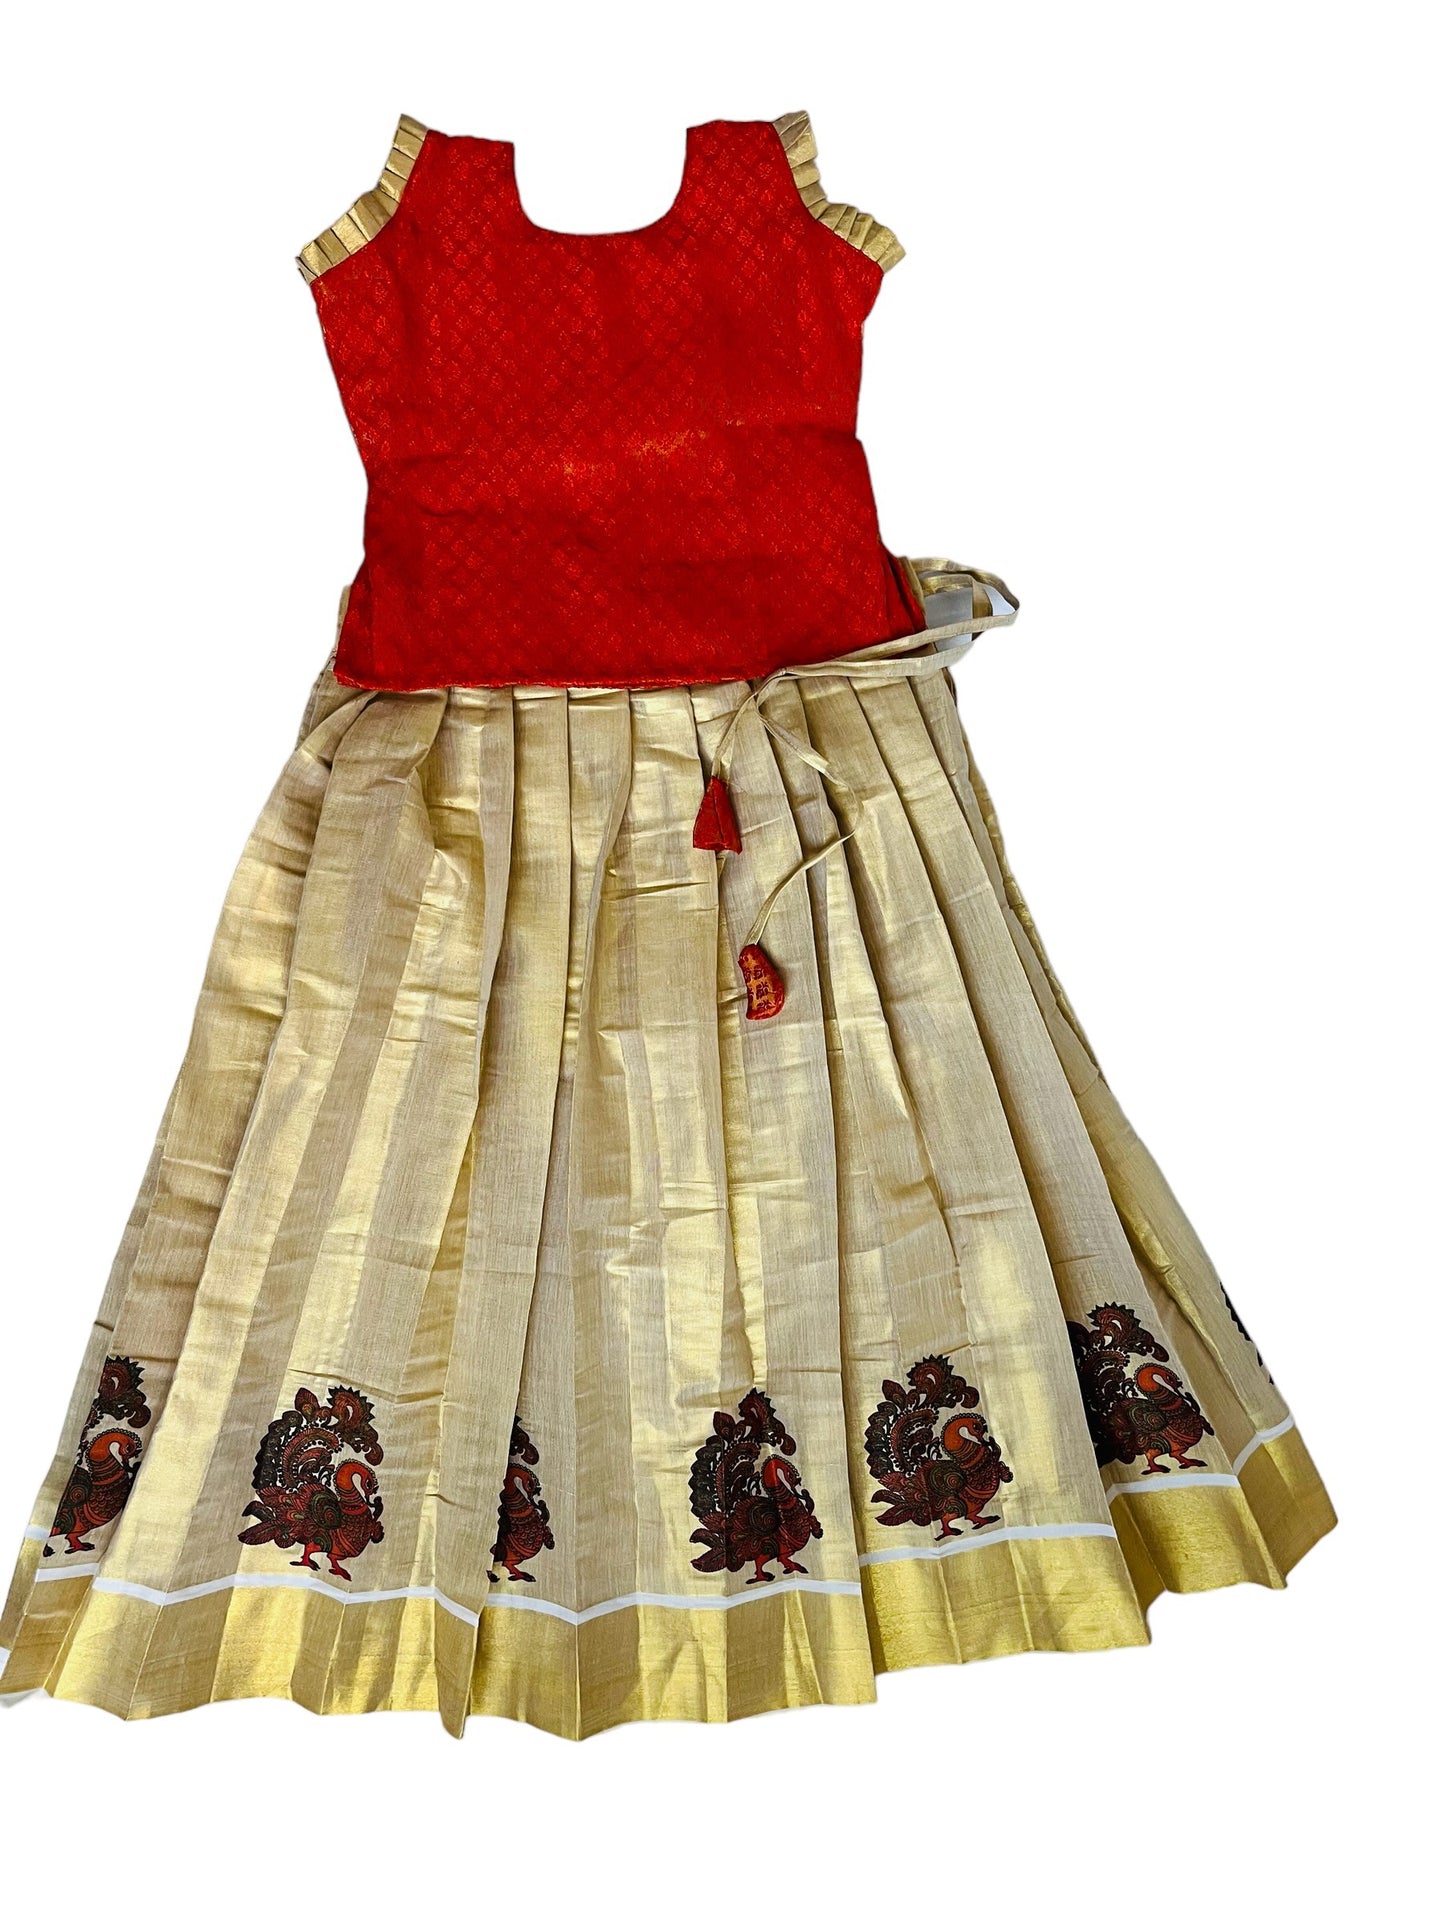 Girls kids Pattu Pavada |Orange Gold Tissue Skirt Blouse| Kerala Traditional Pattu pavadai| Onam Dawani| Kerala saree | Age 0-11|